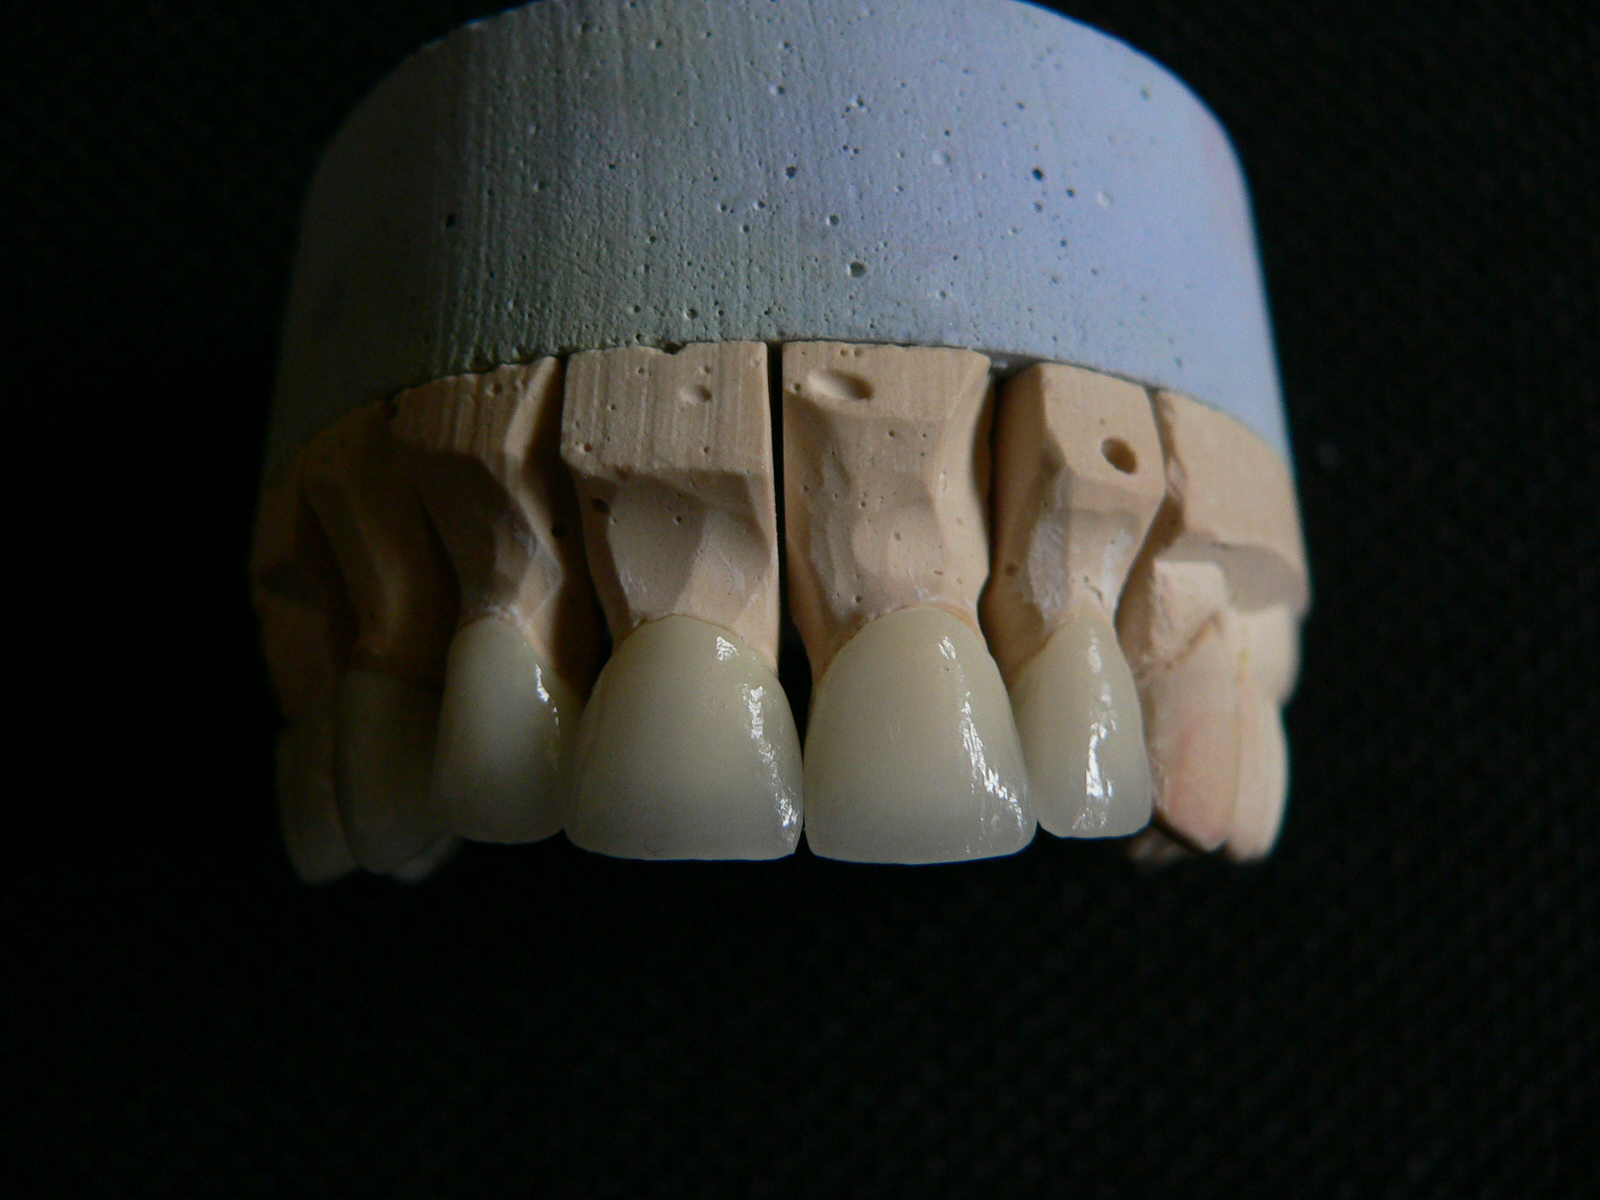 Zahnbehandlung in Ungarn